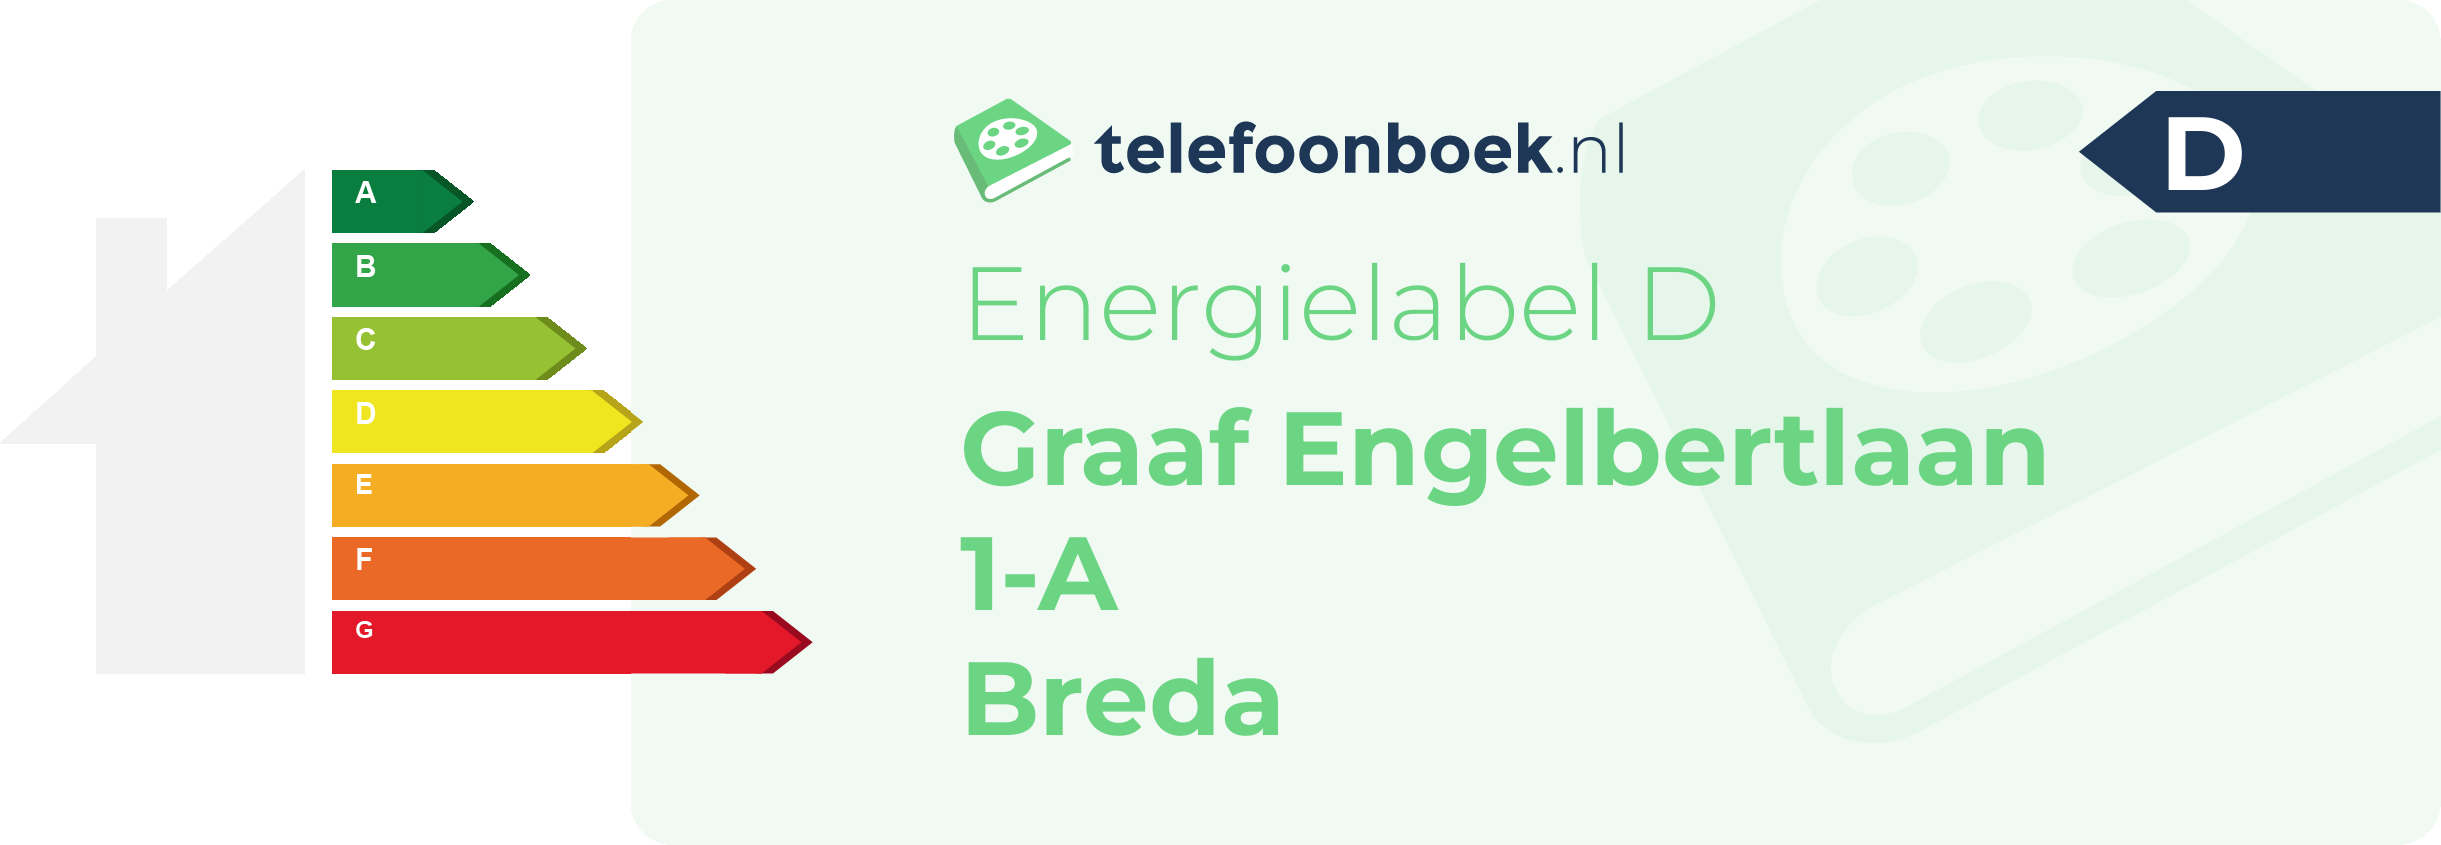 Energielabel Graaf Engelbertlaan 1-A Breda